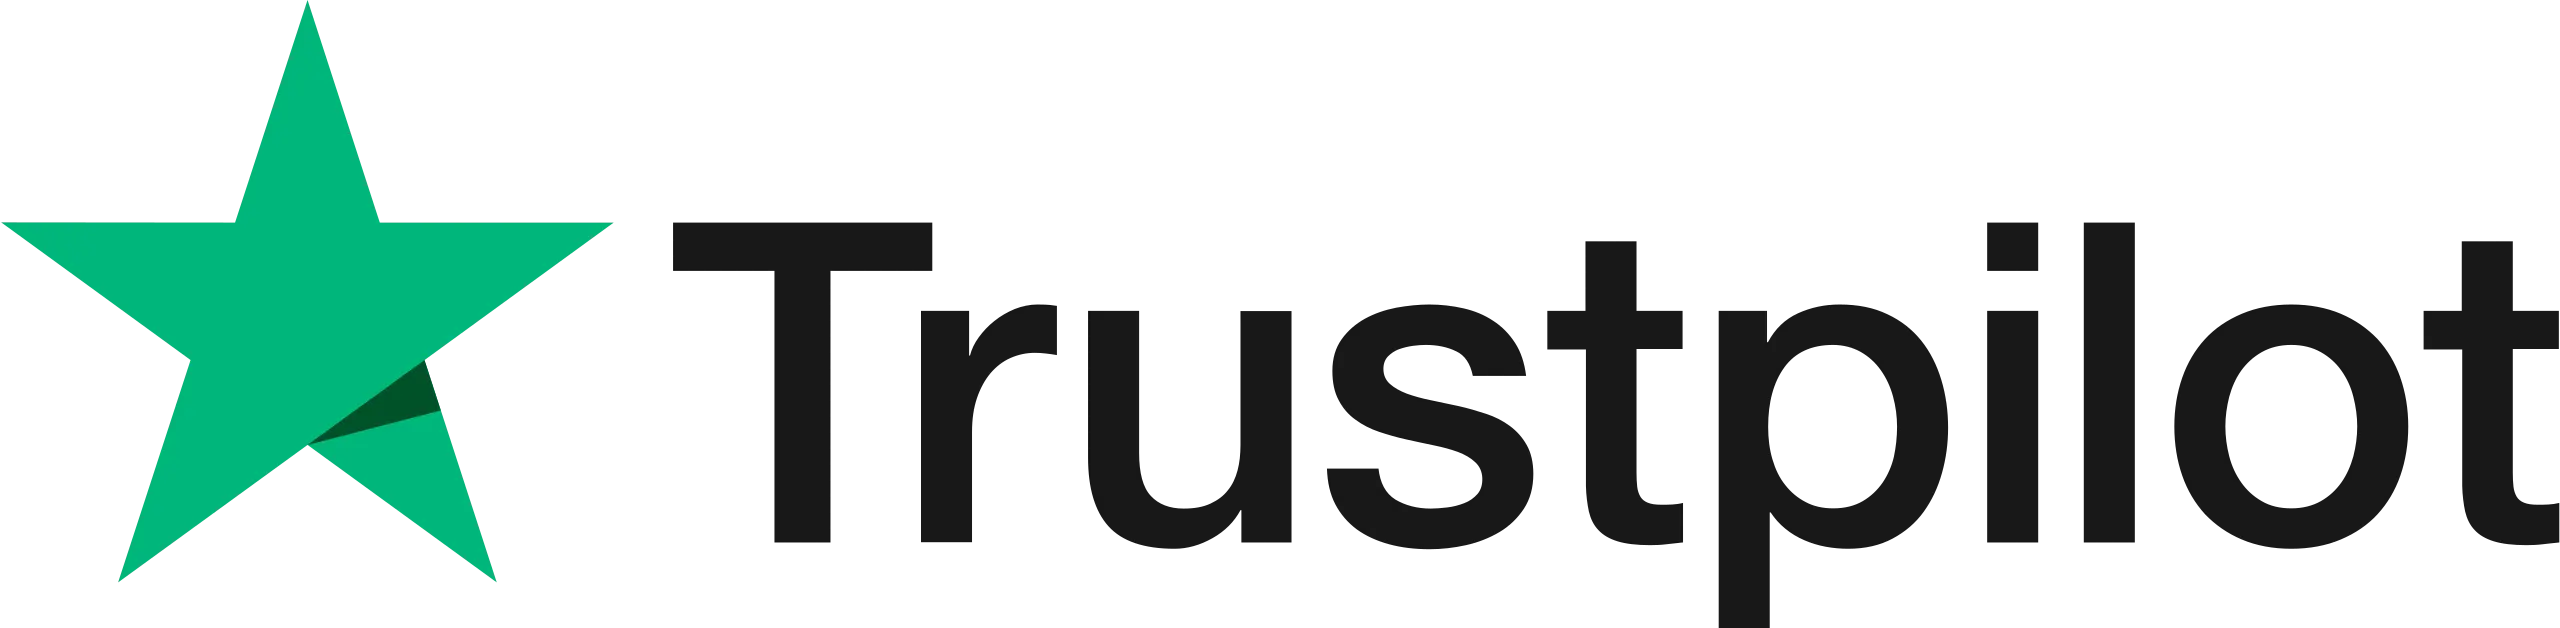 HostingRaja TrustPilot Top Rating